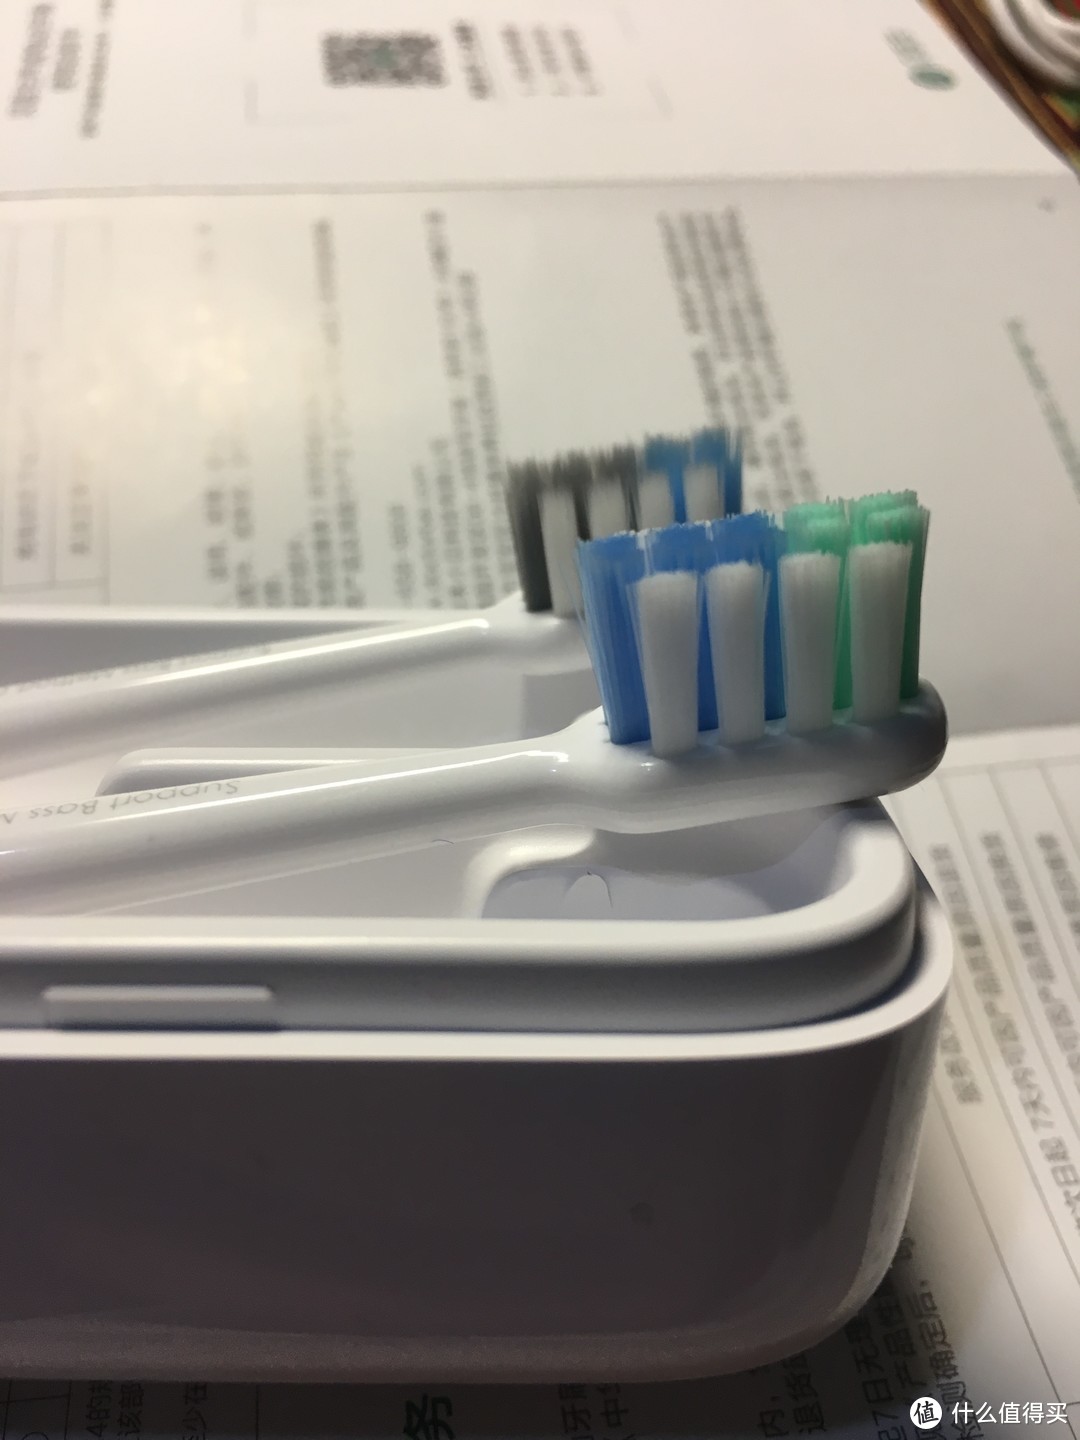 平民的价格 高端的享受 贝医生电动牙刷使用评测